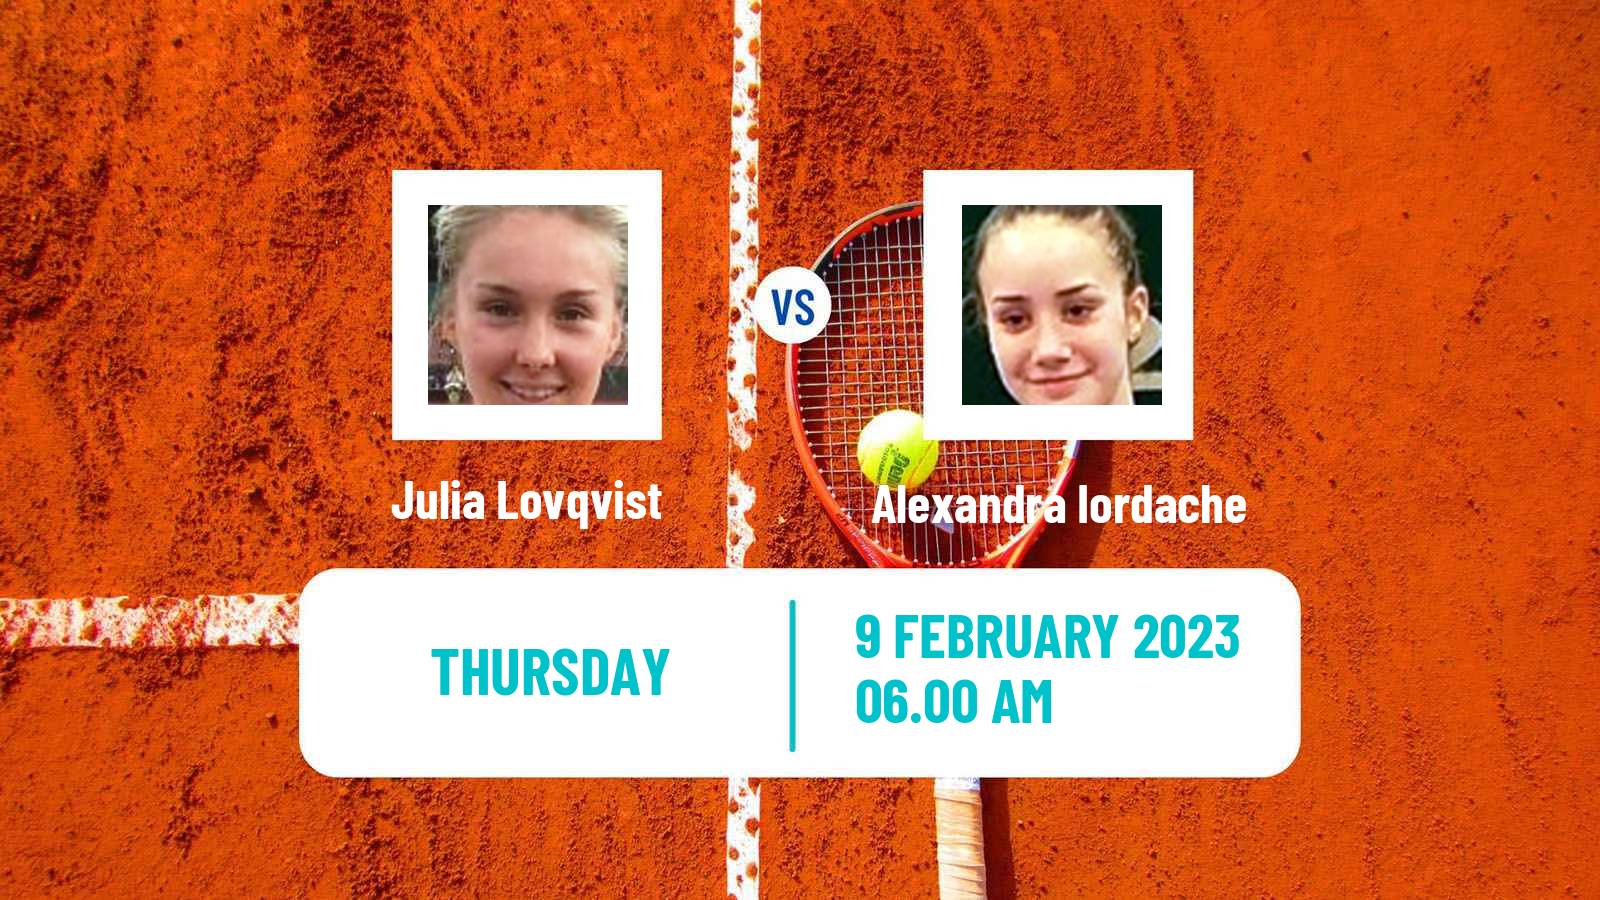 Tennis ITF Tournaments Julia Lovqvist - Alexandra Iordache